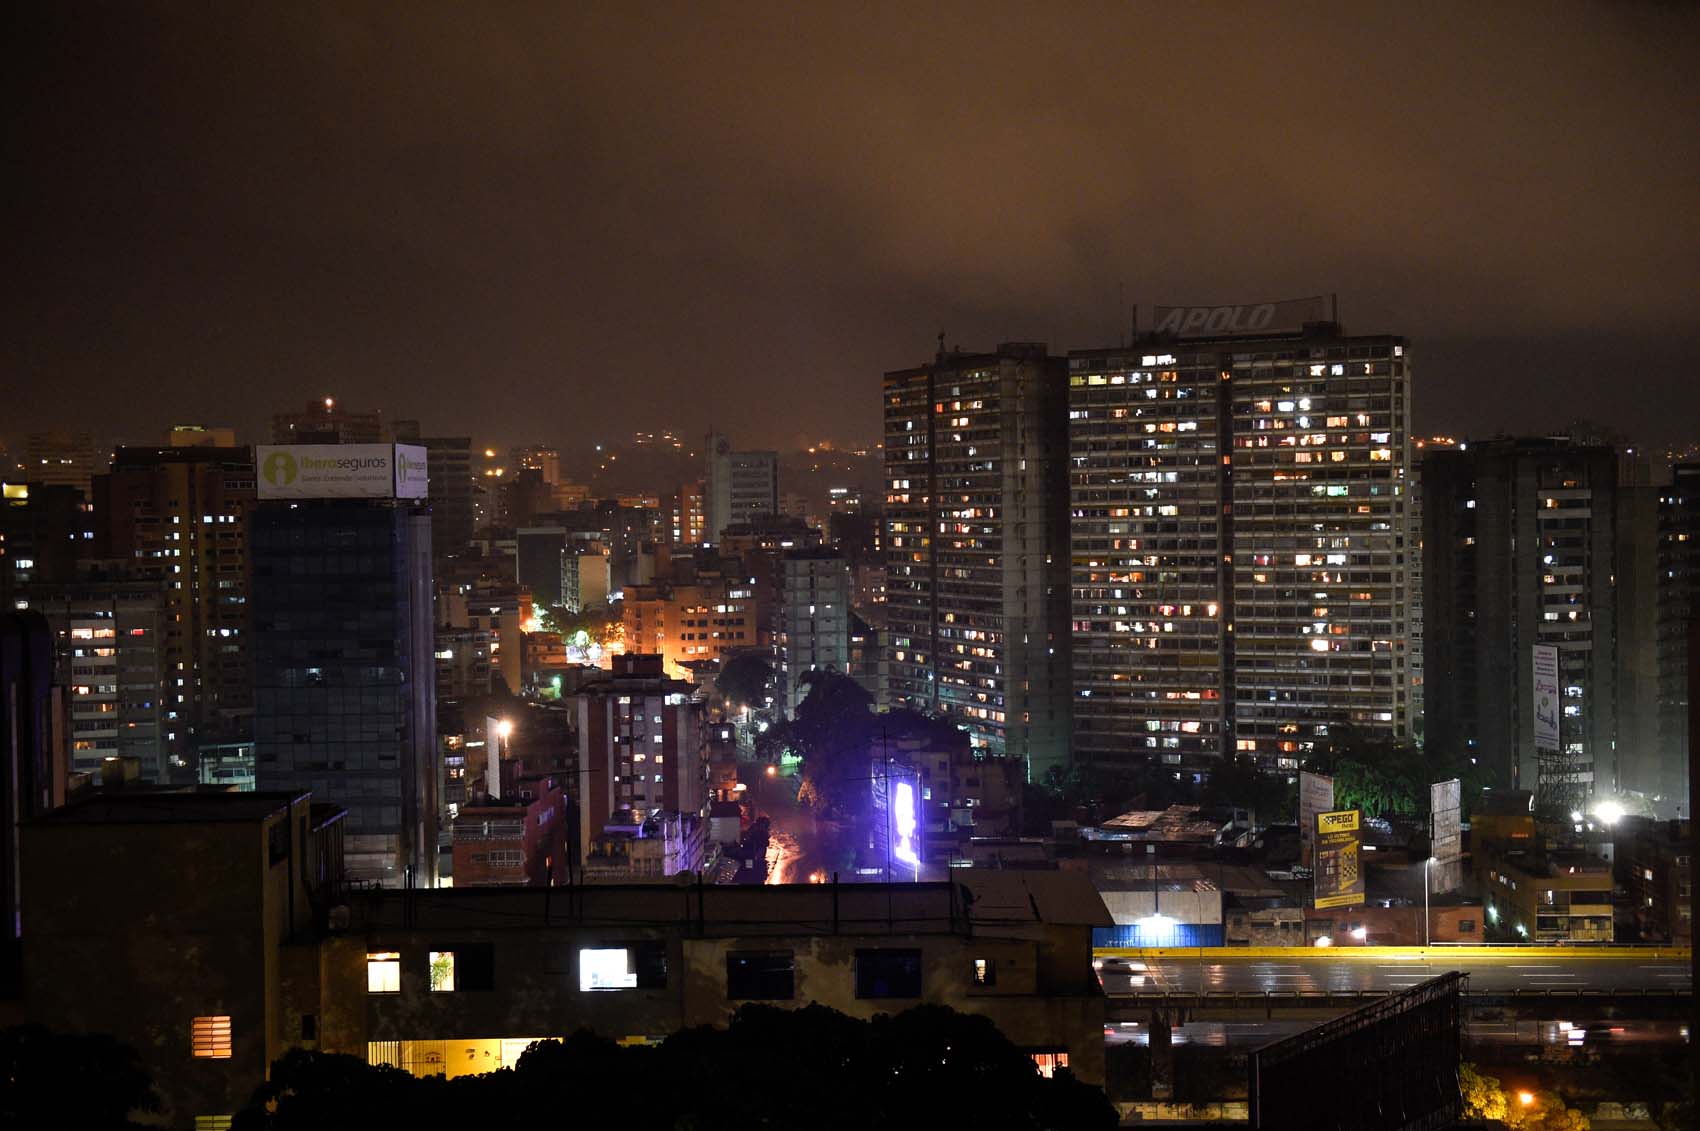 Cazando “promos” y cuidando la gasolina: Así los jóvenes salen de noche en Venezuela